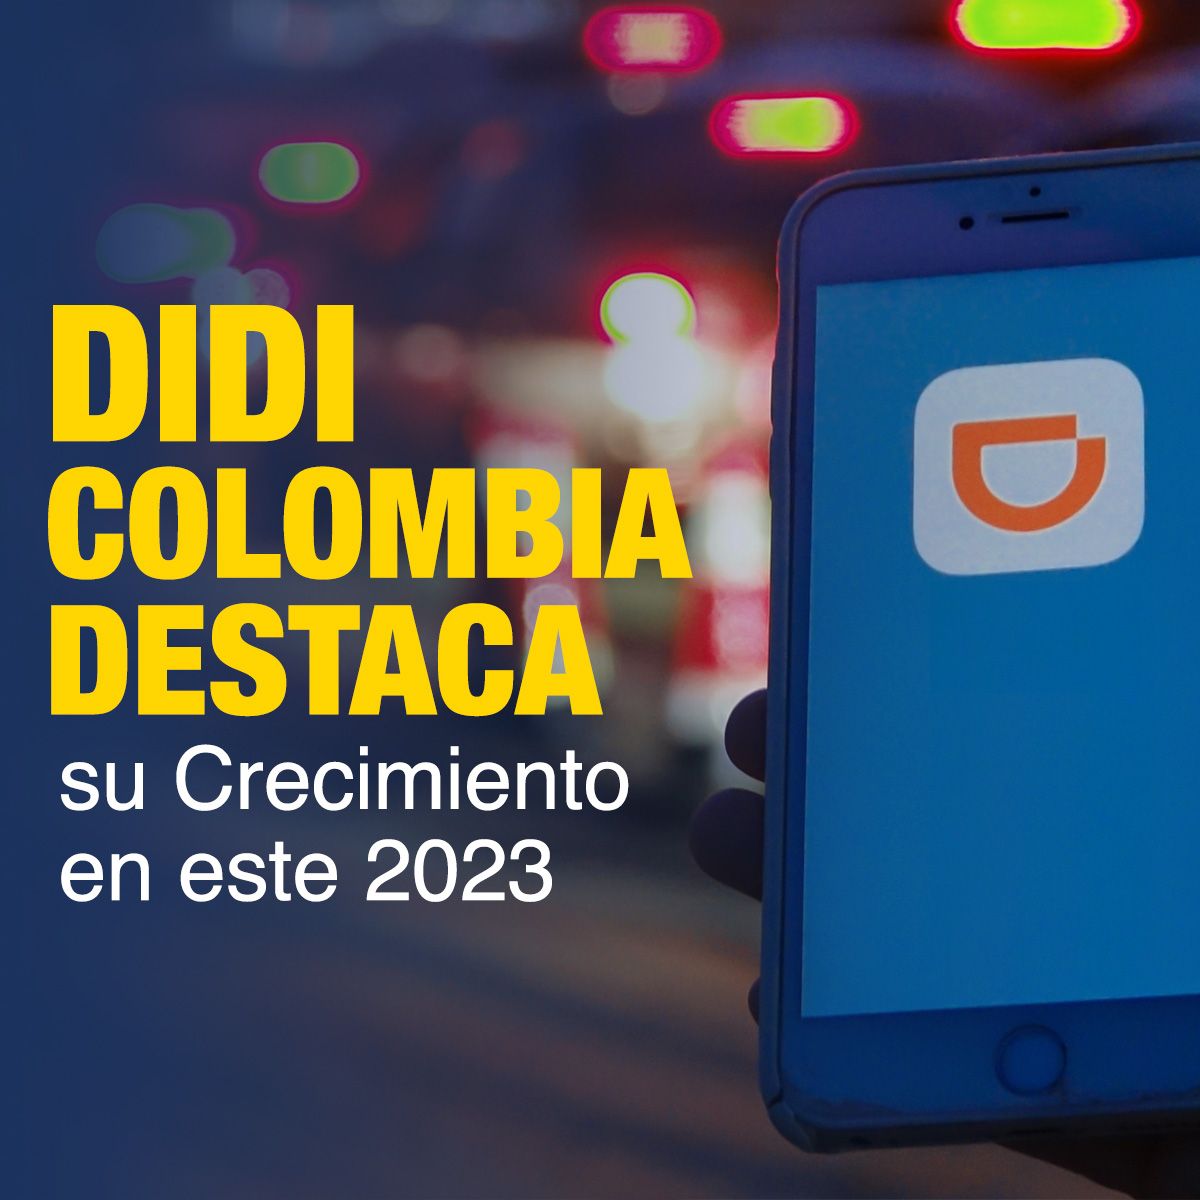 Didi Colombia Destaca su Crecimiento en este 2023